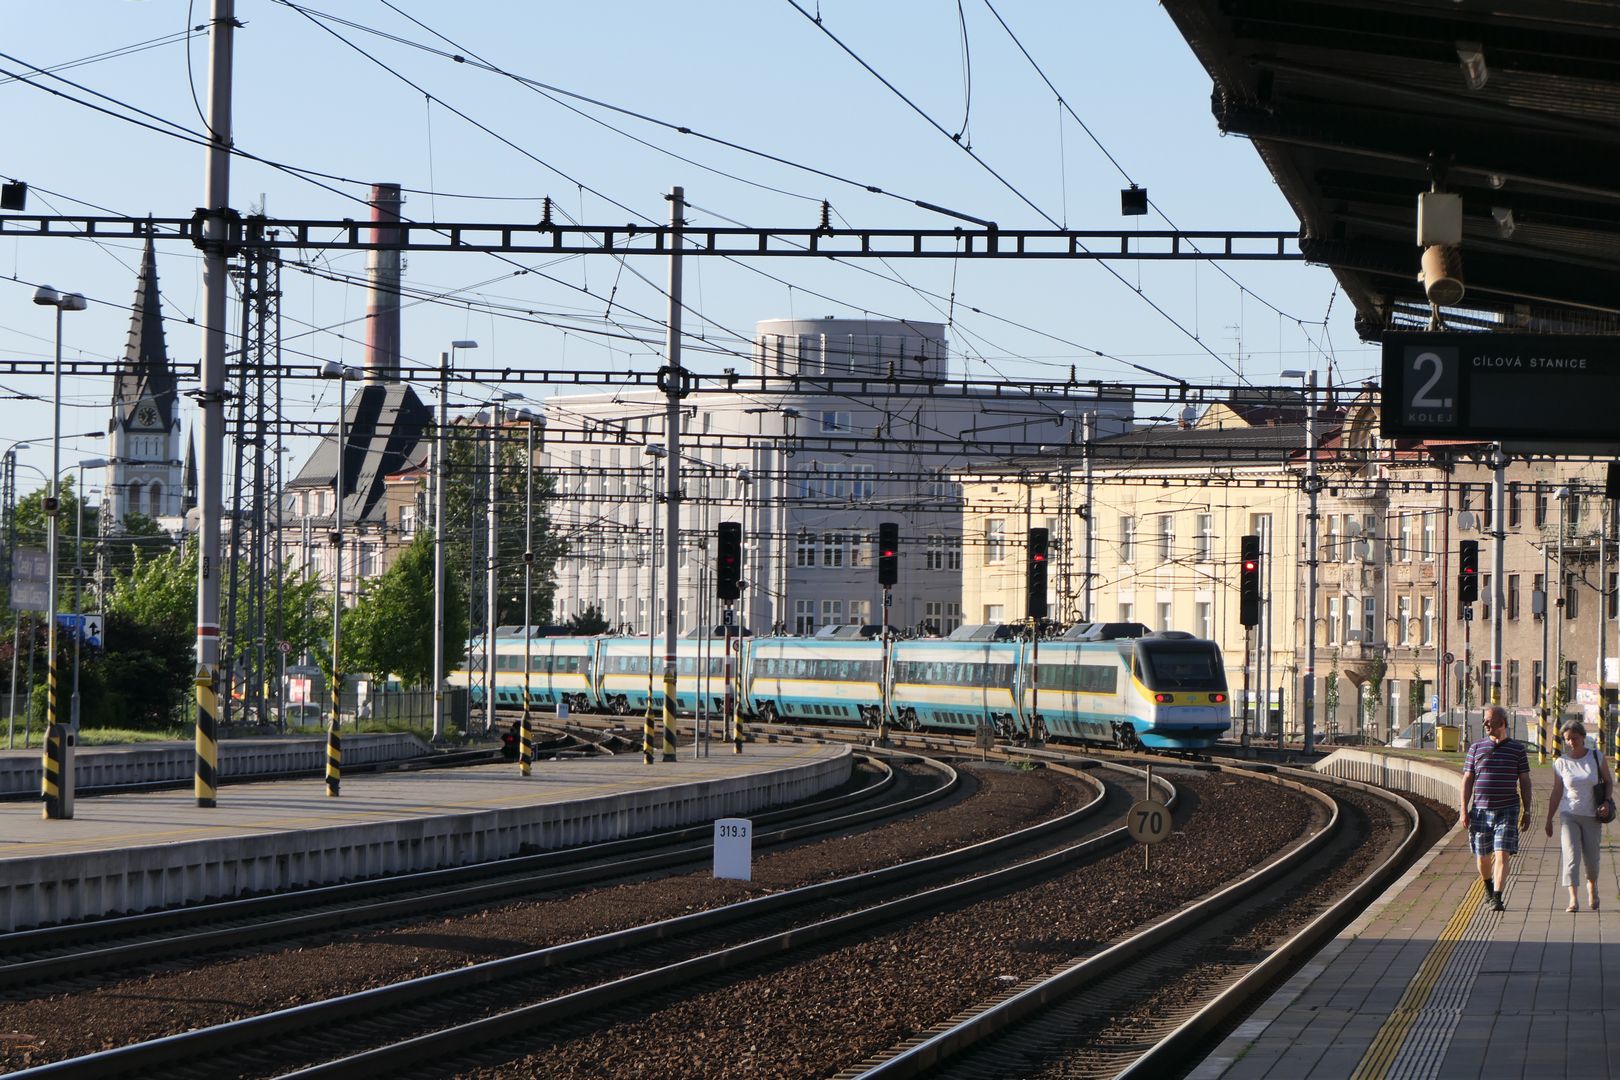 Pociąg intercity do Pragi odjeżdżający z dworca w Czeskim Cieszynie.